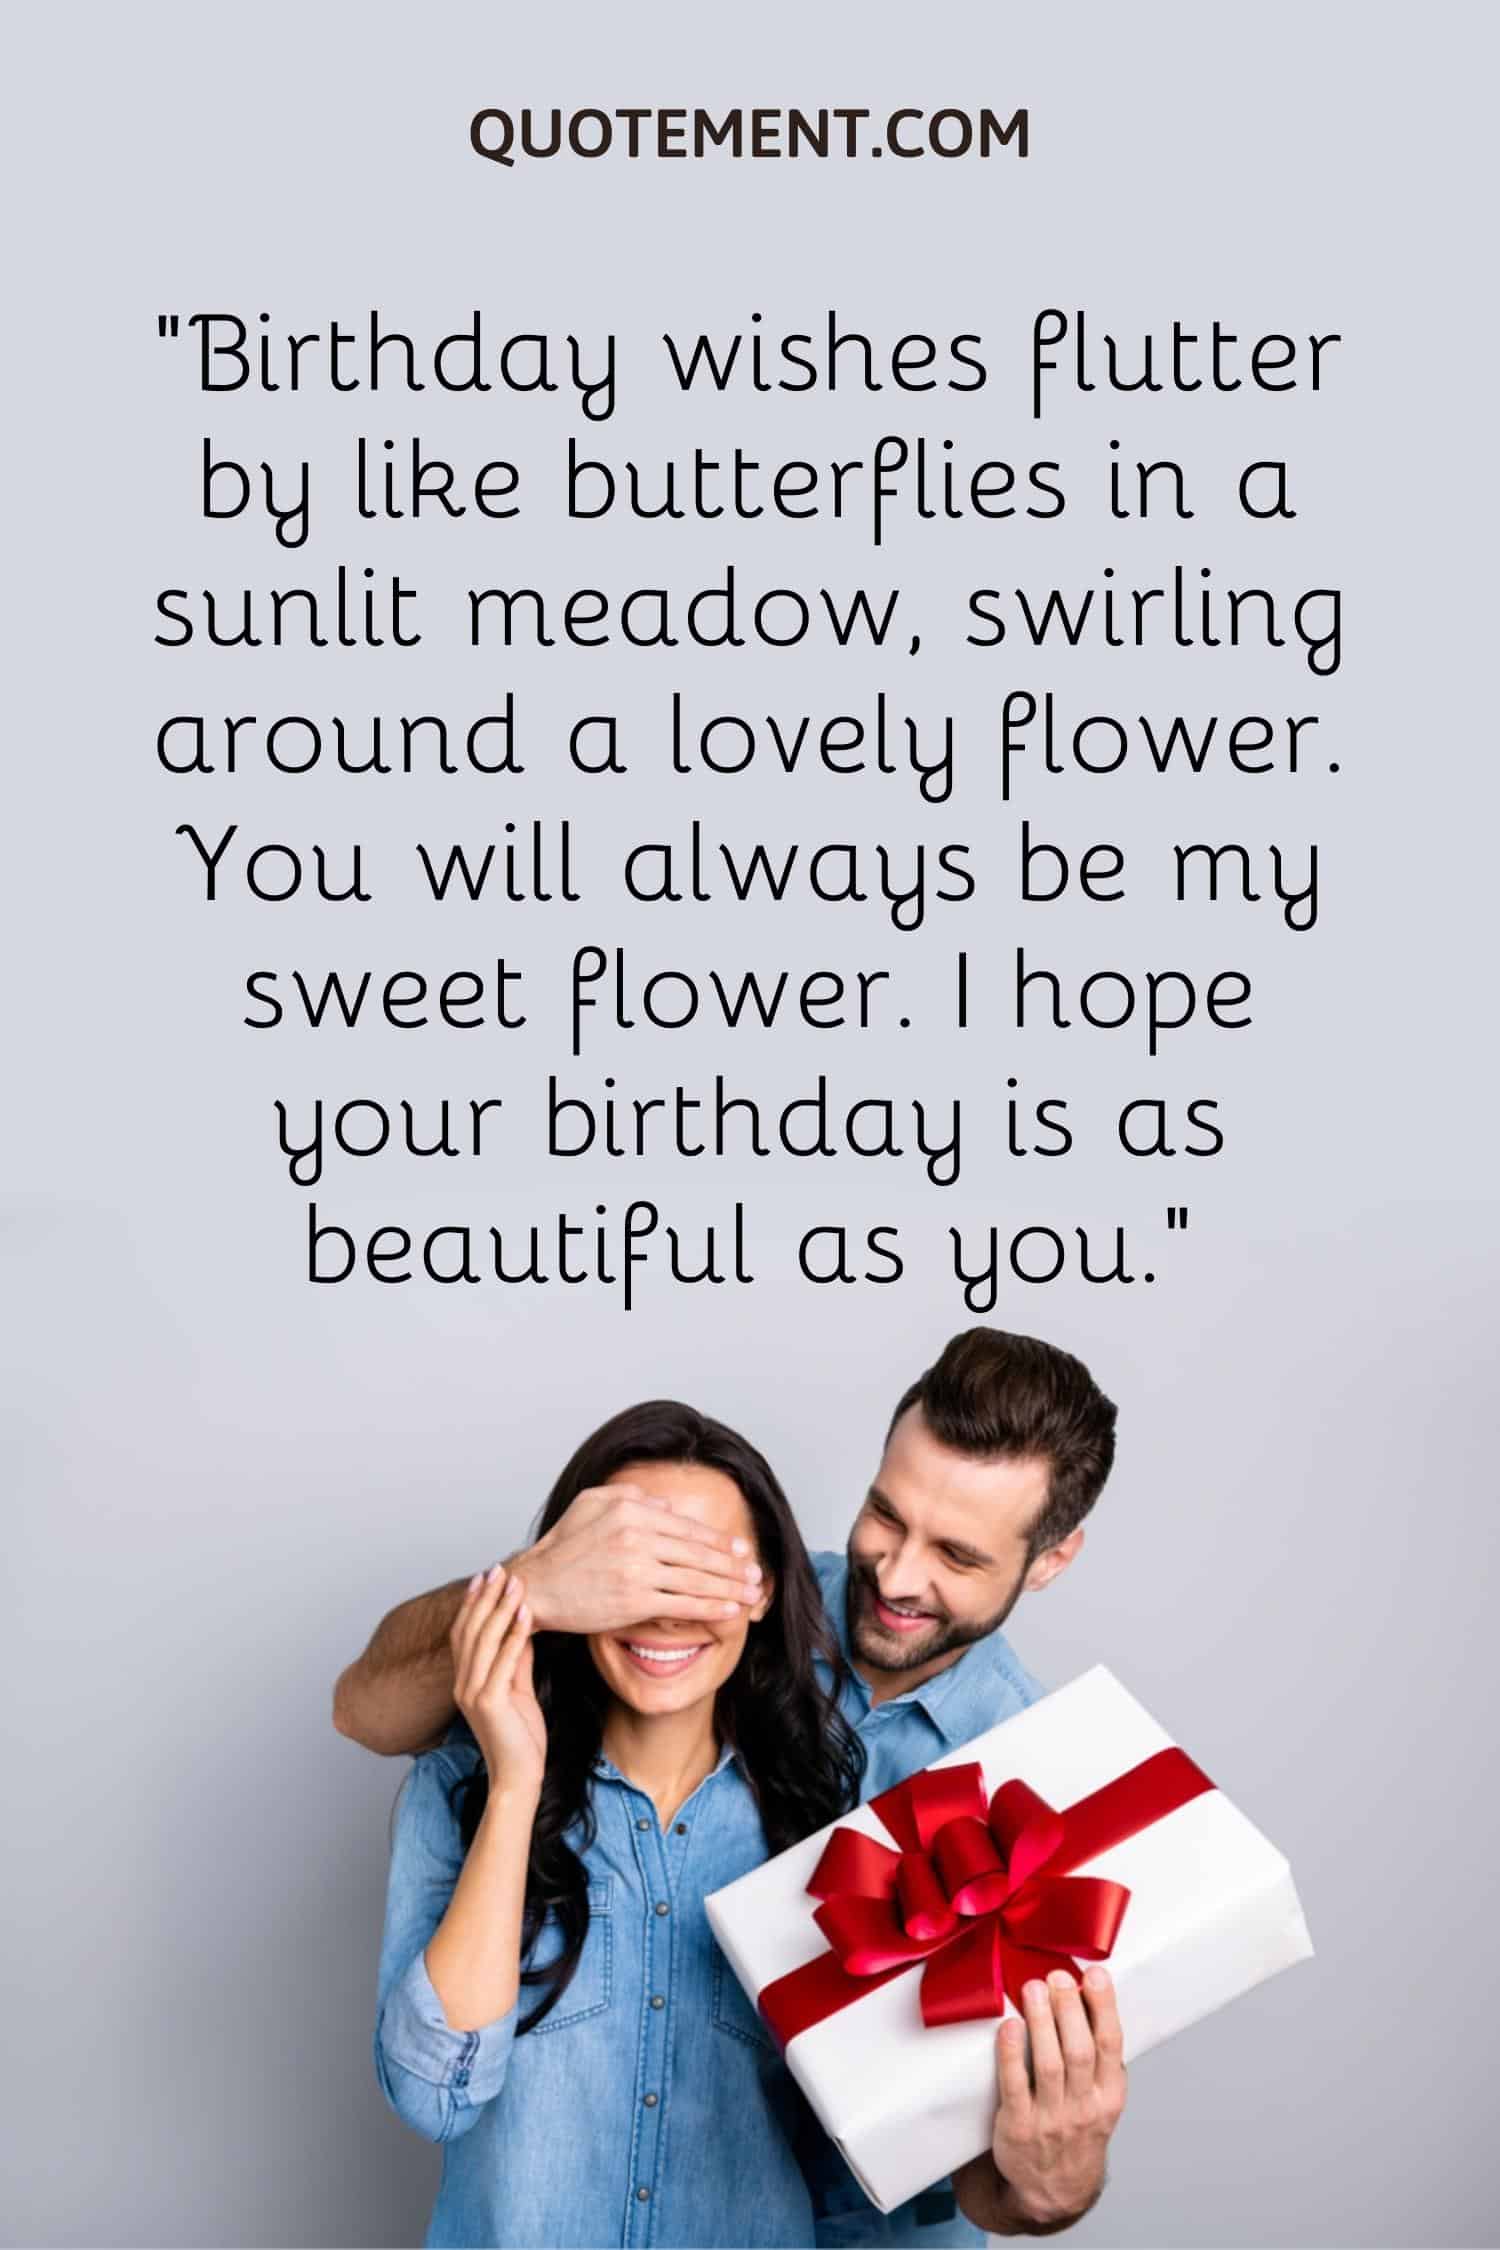 Birthday wishes flutter by like butterflies in a sunlit meadow